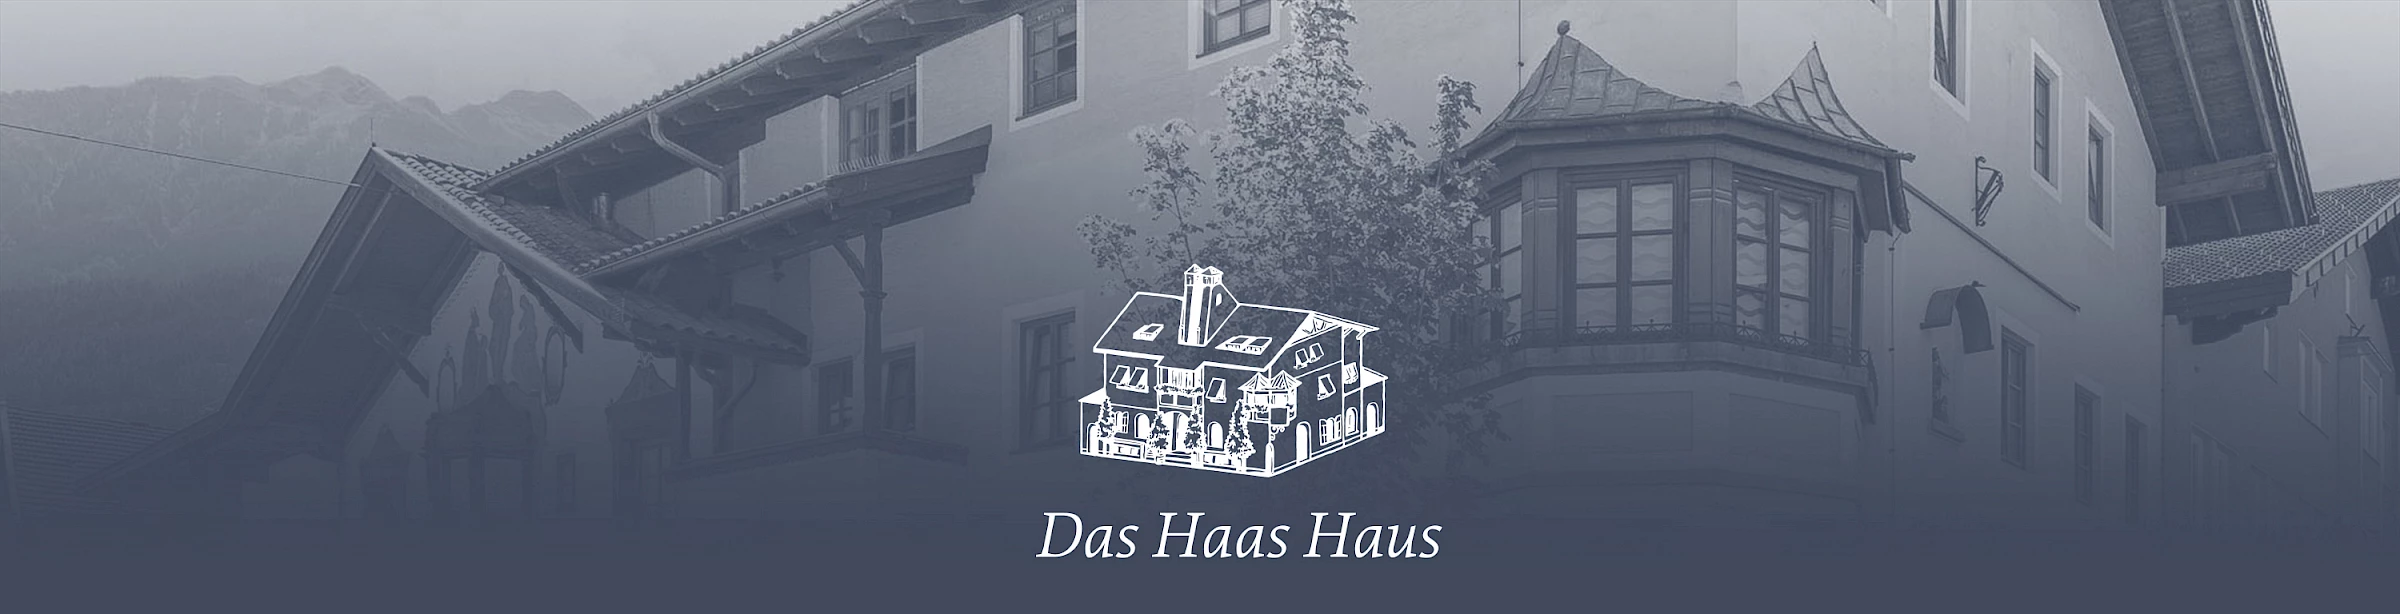 Logo und Hintergrundbild des Haas Haus in Telfs. Corporate Design von Werbeagentur Buerostark